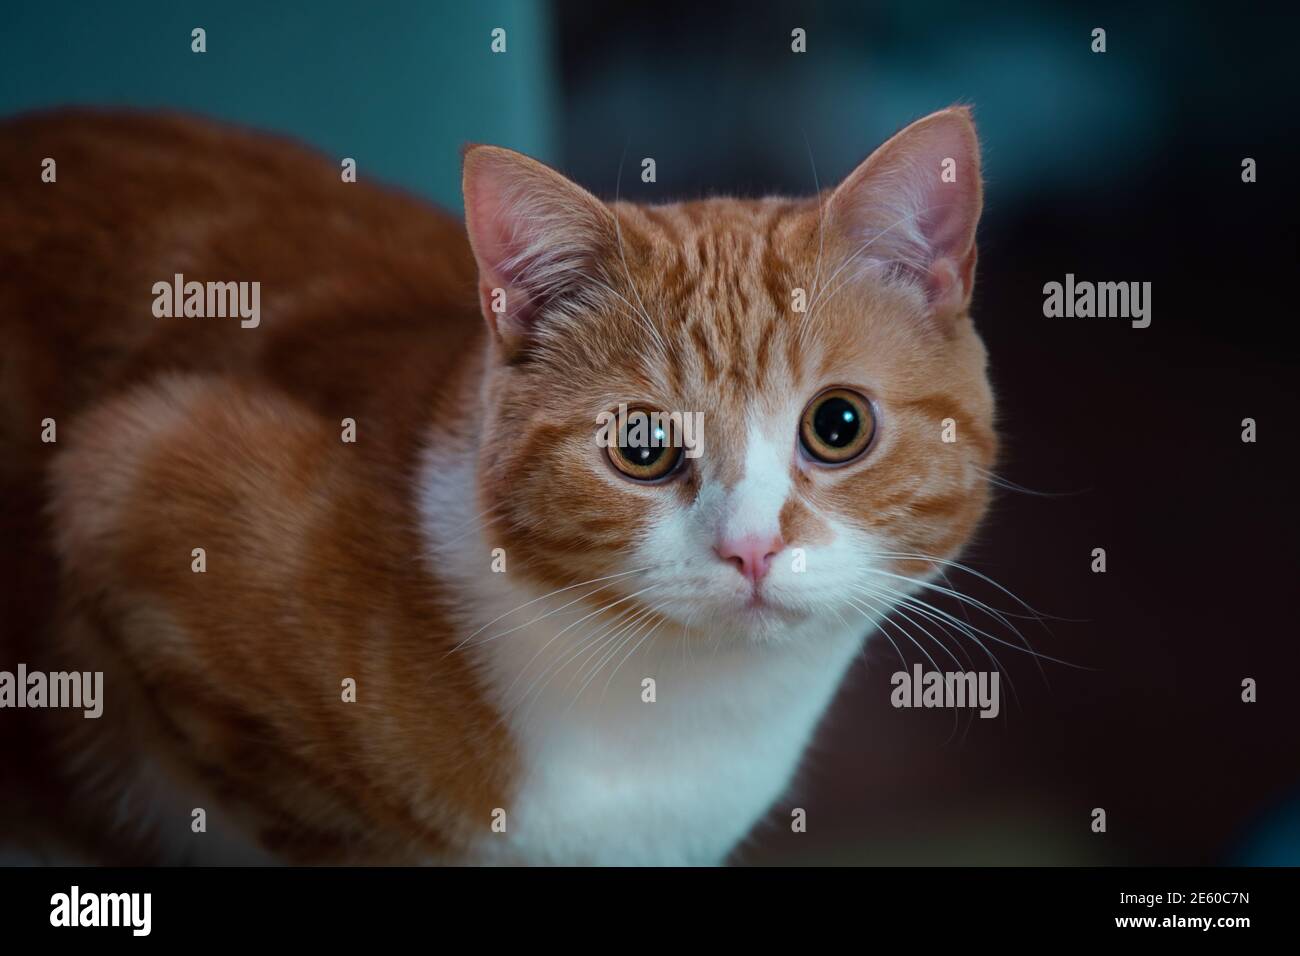 Imagen auténtica de un gato de jengibre mirando la cámara con un hermoso fondo cálido y acogedor. Foto de stock